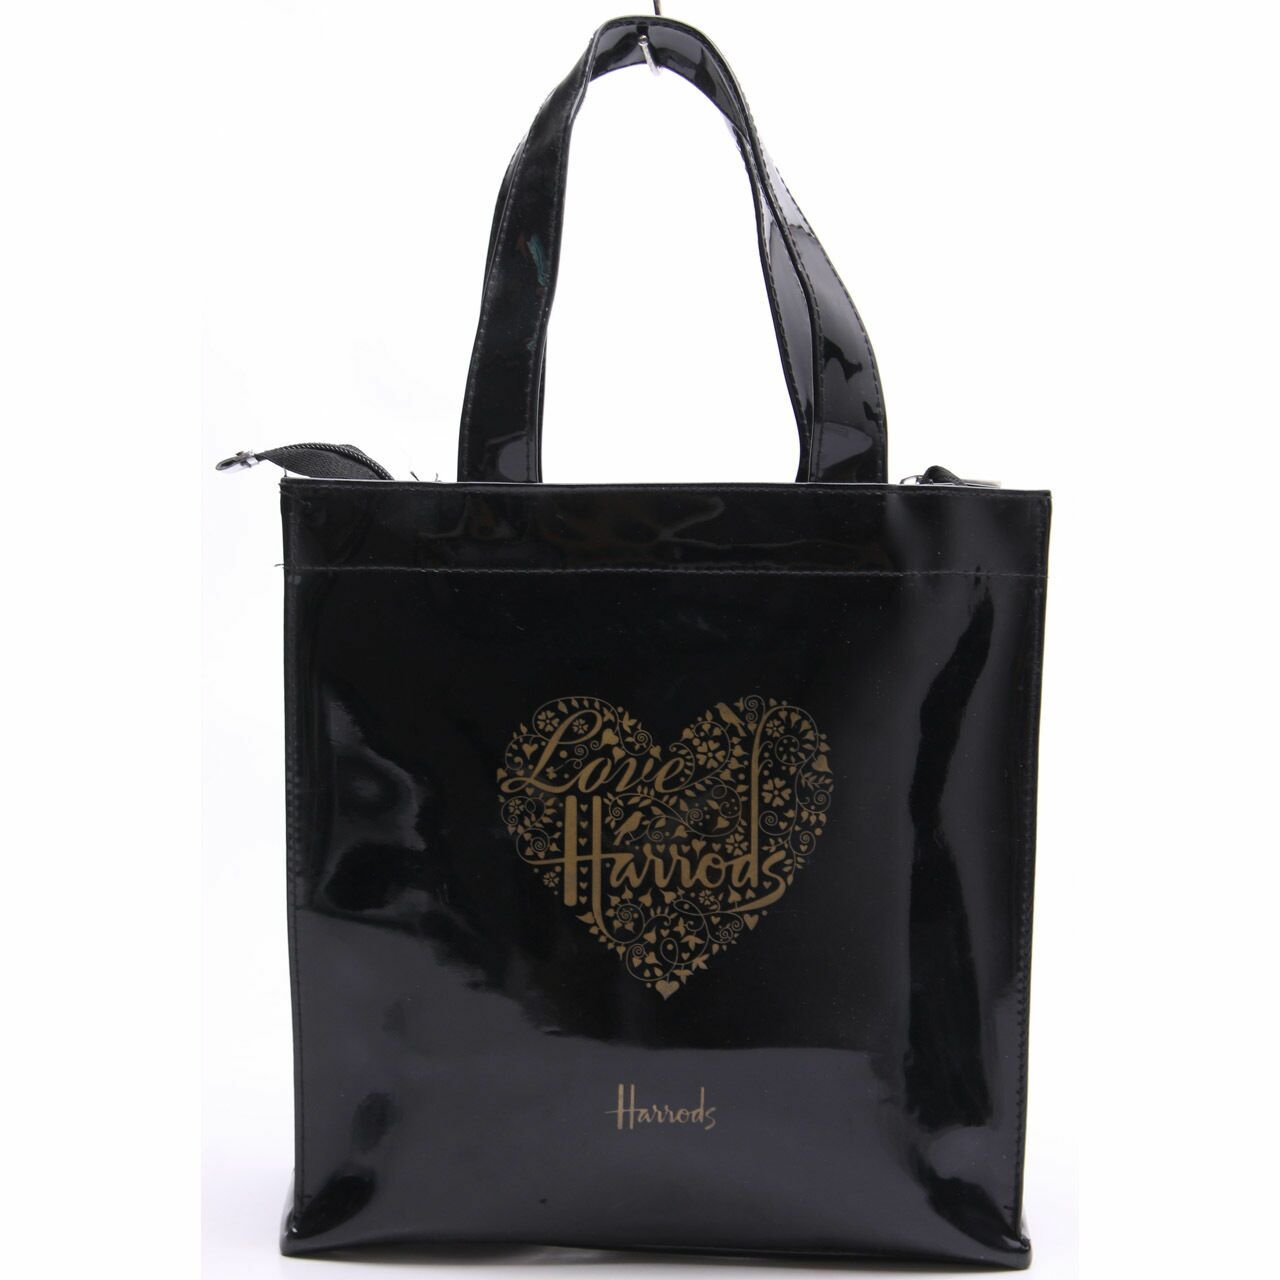 Harrods Black Handbag